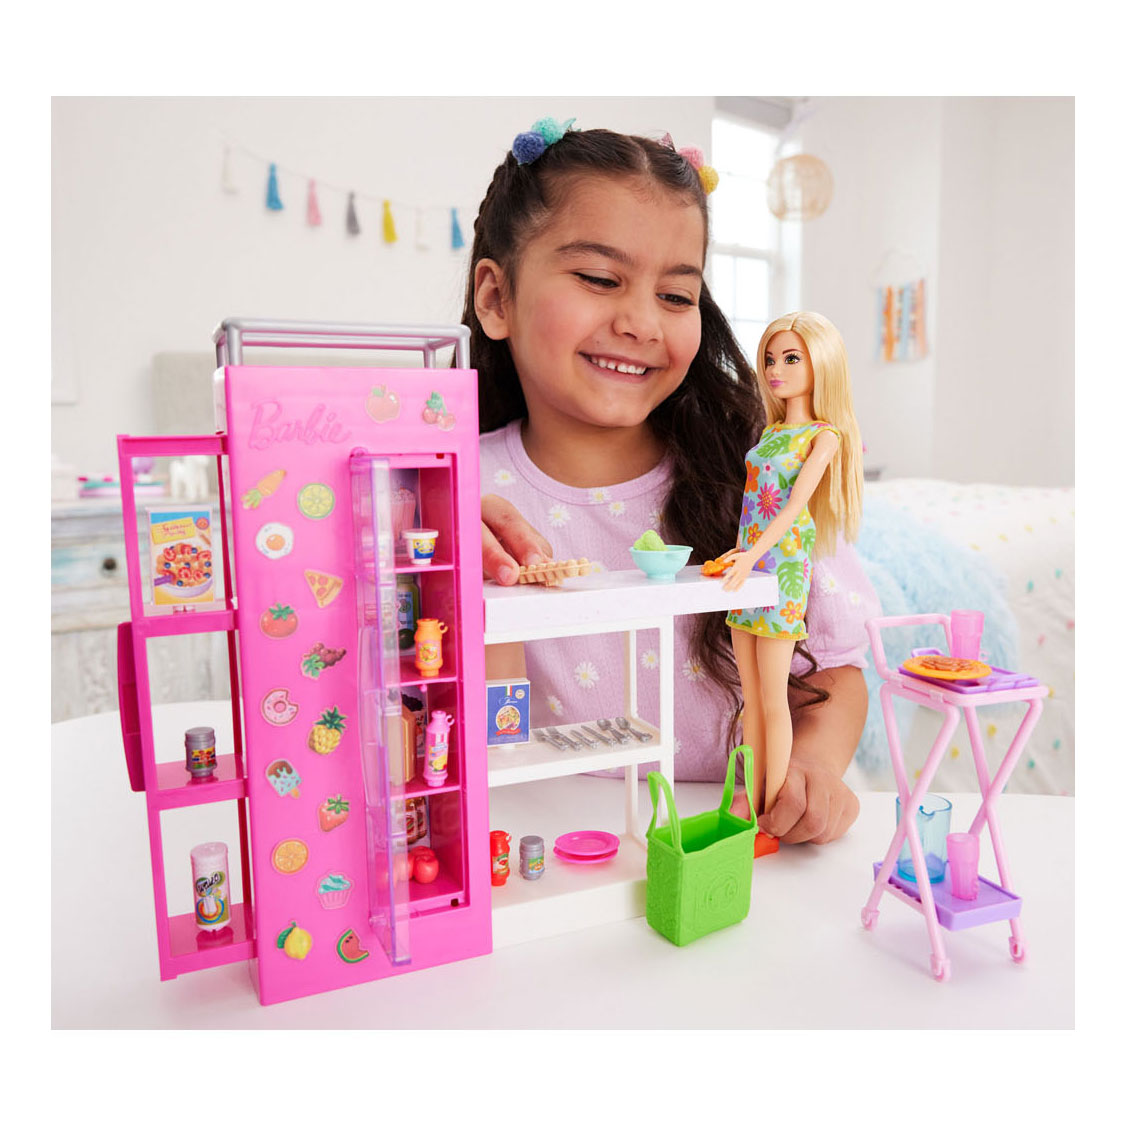 Poupée Barbie avec ensemble de jeu Dream Kitchen